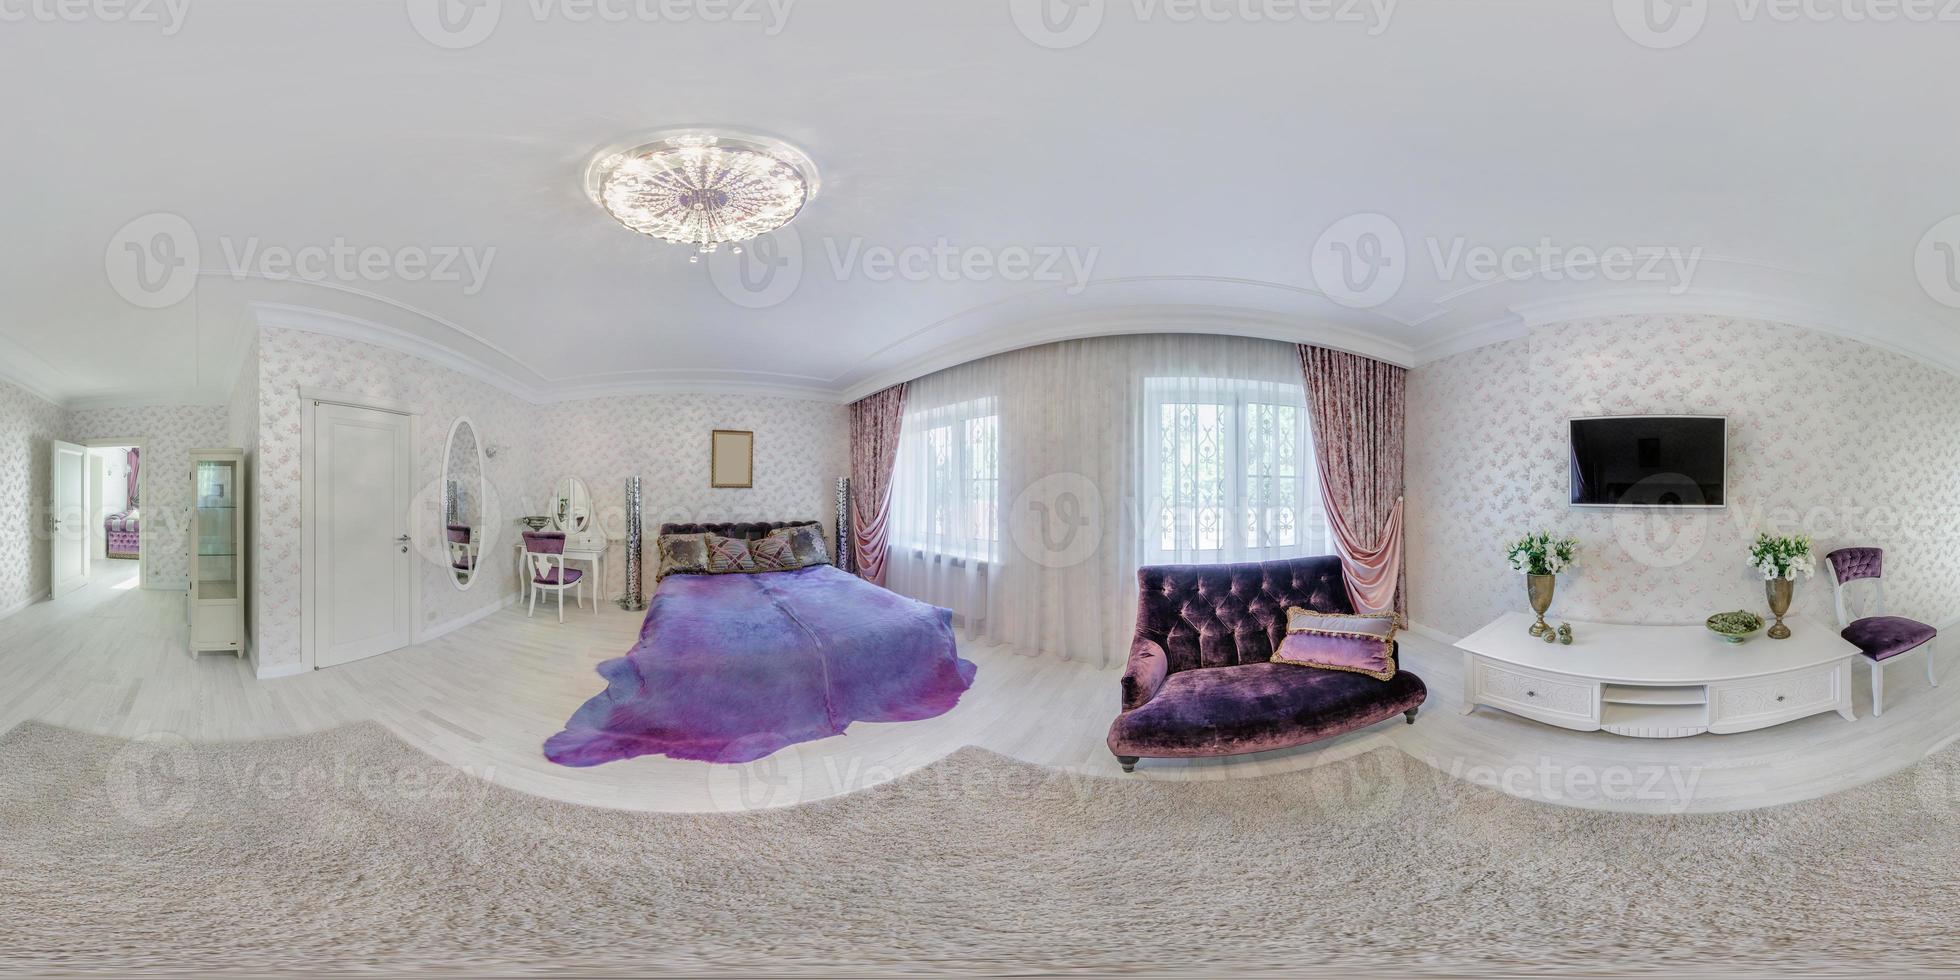 vol hdri 360 panorama visie in slaapkamer kamer in luxe de elite vip duur hotel of appartement in equirectangular naadloos bolvormig projectie, vr ar inhoud foto